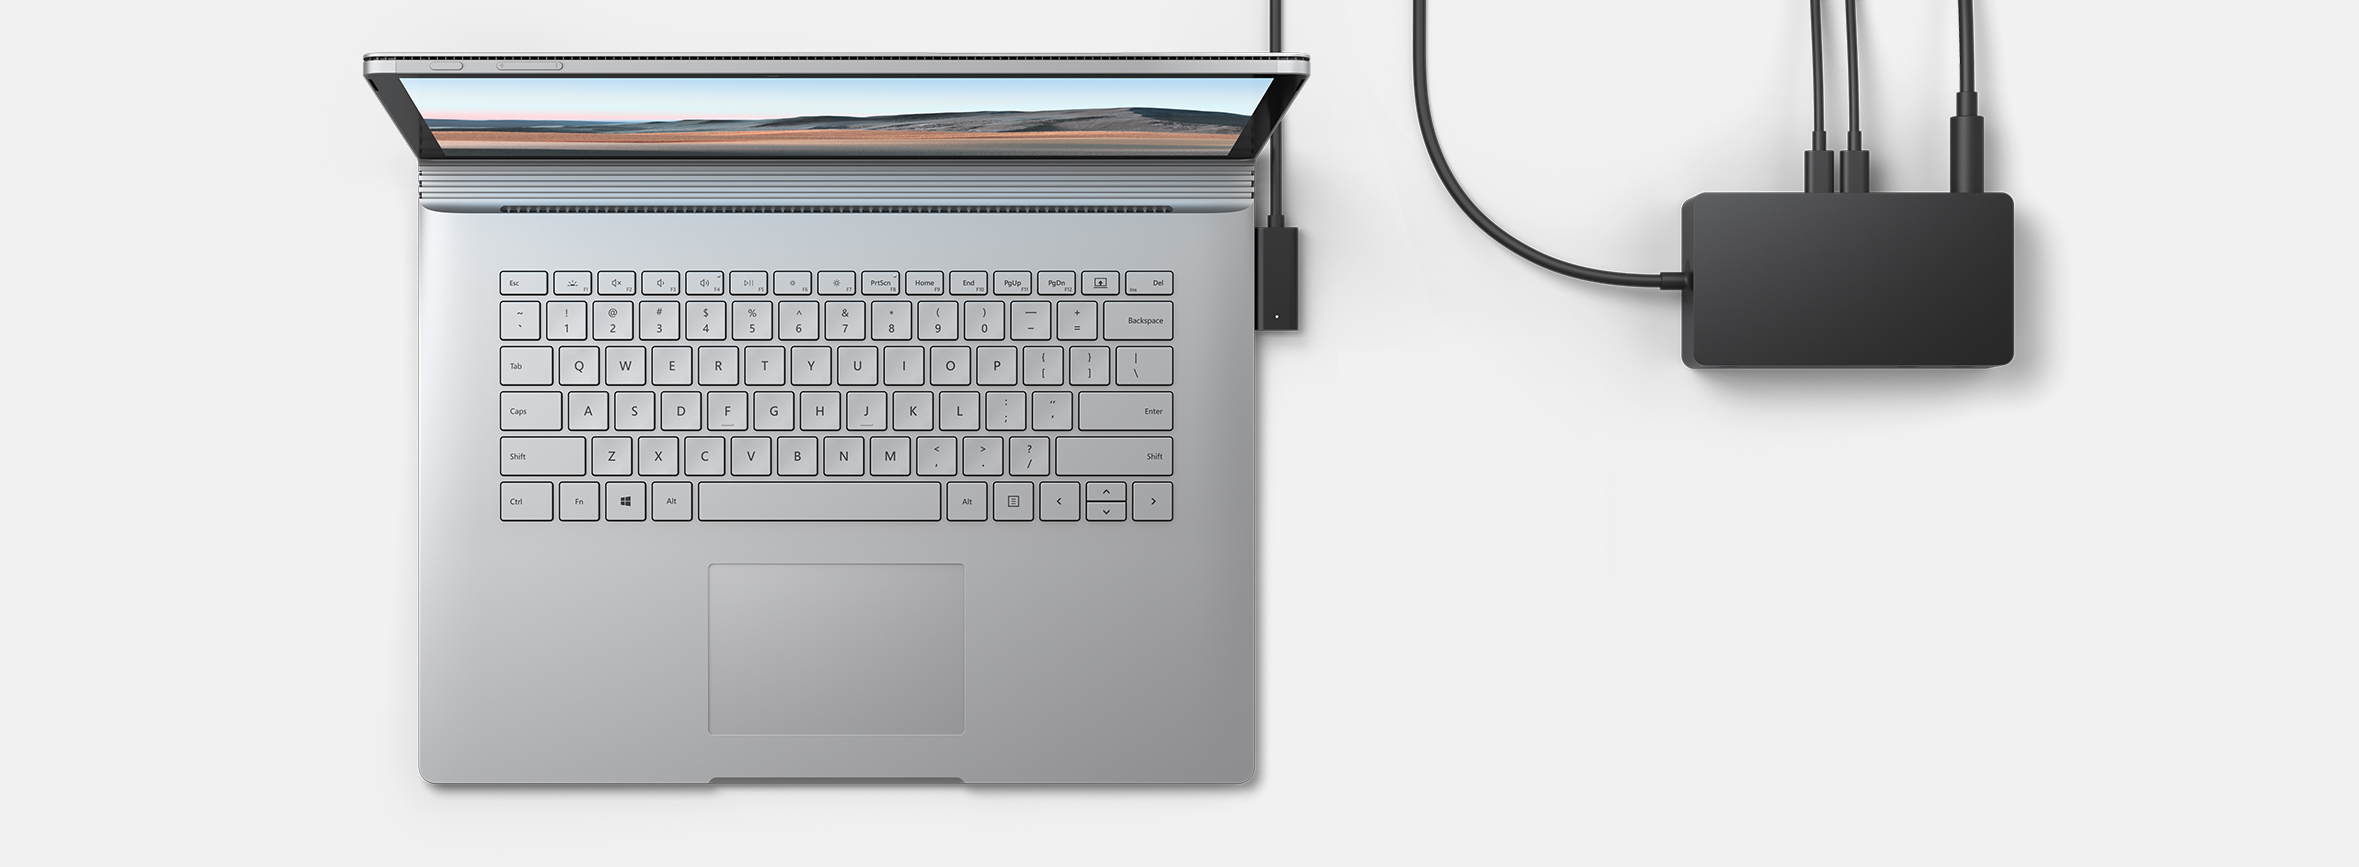 将 Surface 转变为桌面电脑